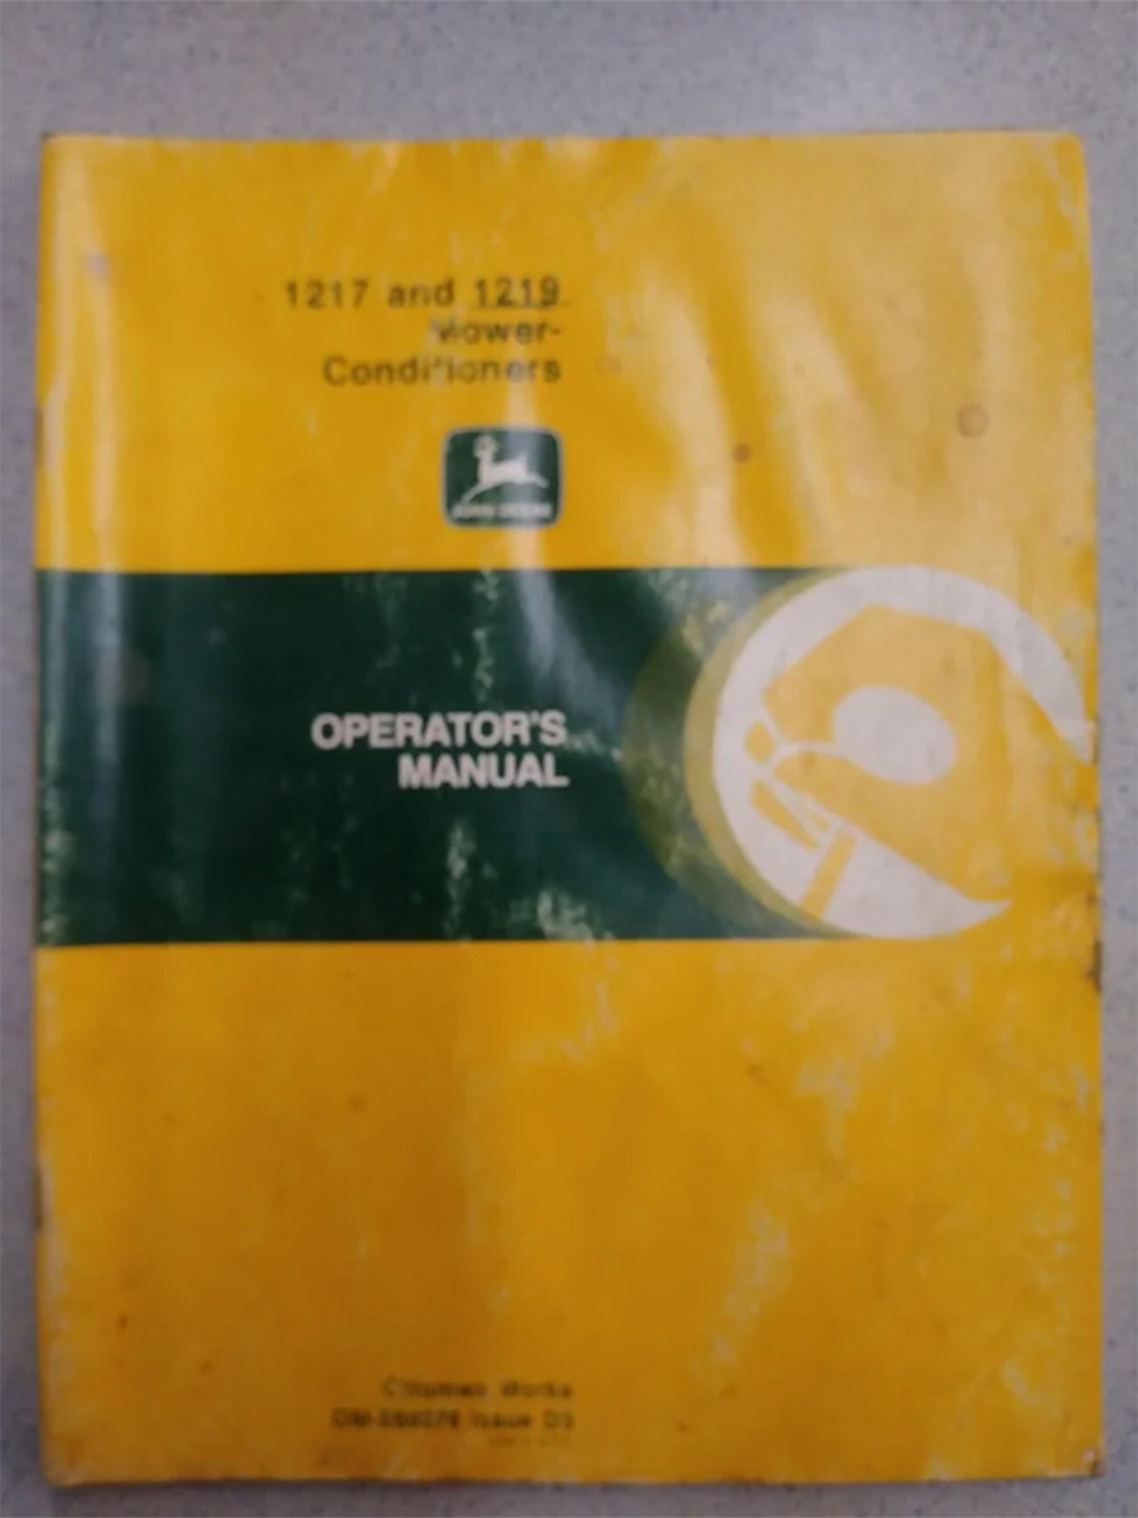 John Deere 1217 and 1219 Operator's Manual